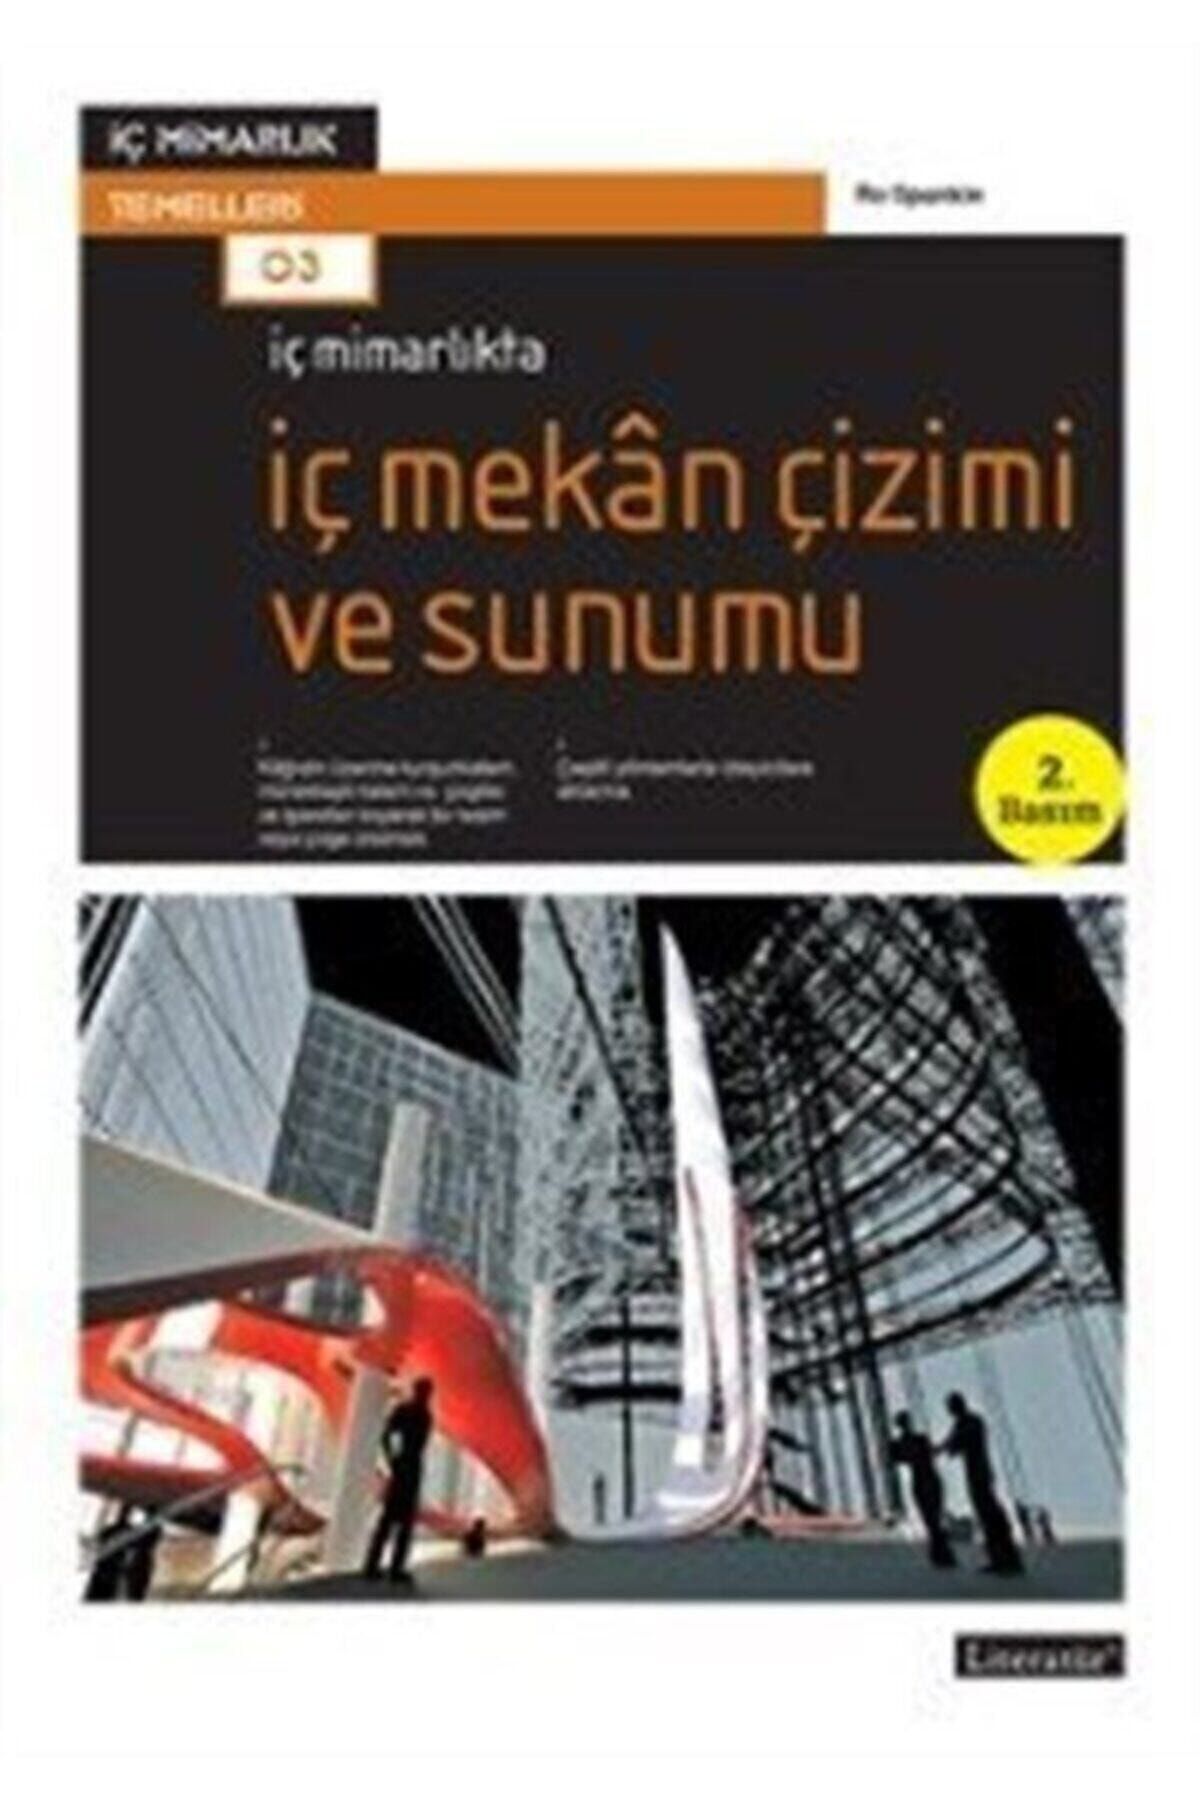 Literatür Yayınları Iç Mimarlıkta Iç Mekan Çizimi Ve Sunumu Ro Spankie - Ro Spankie